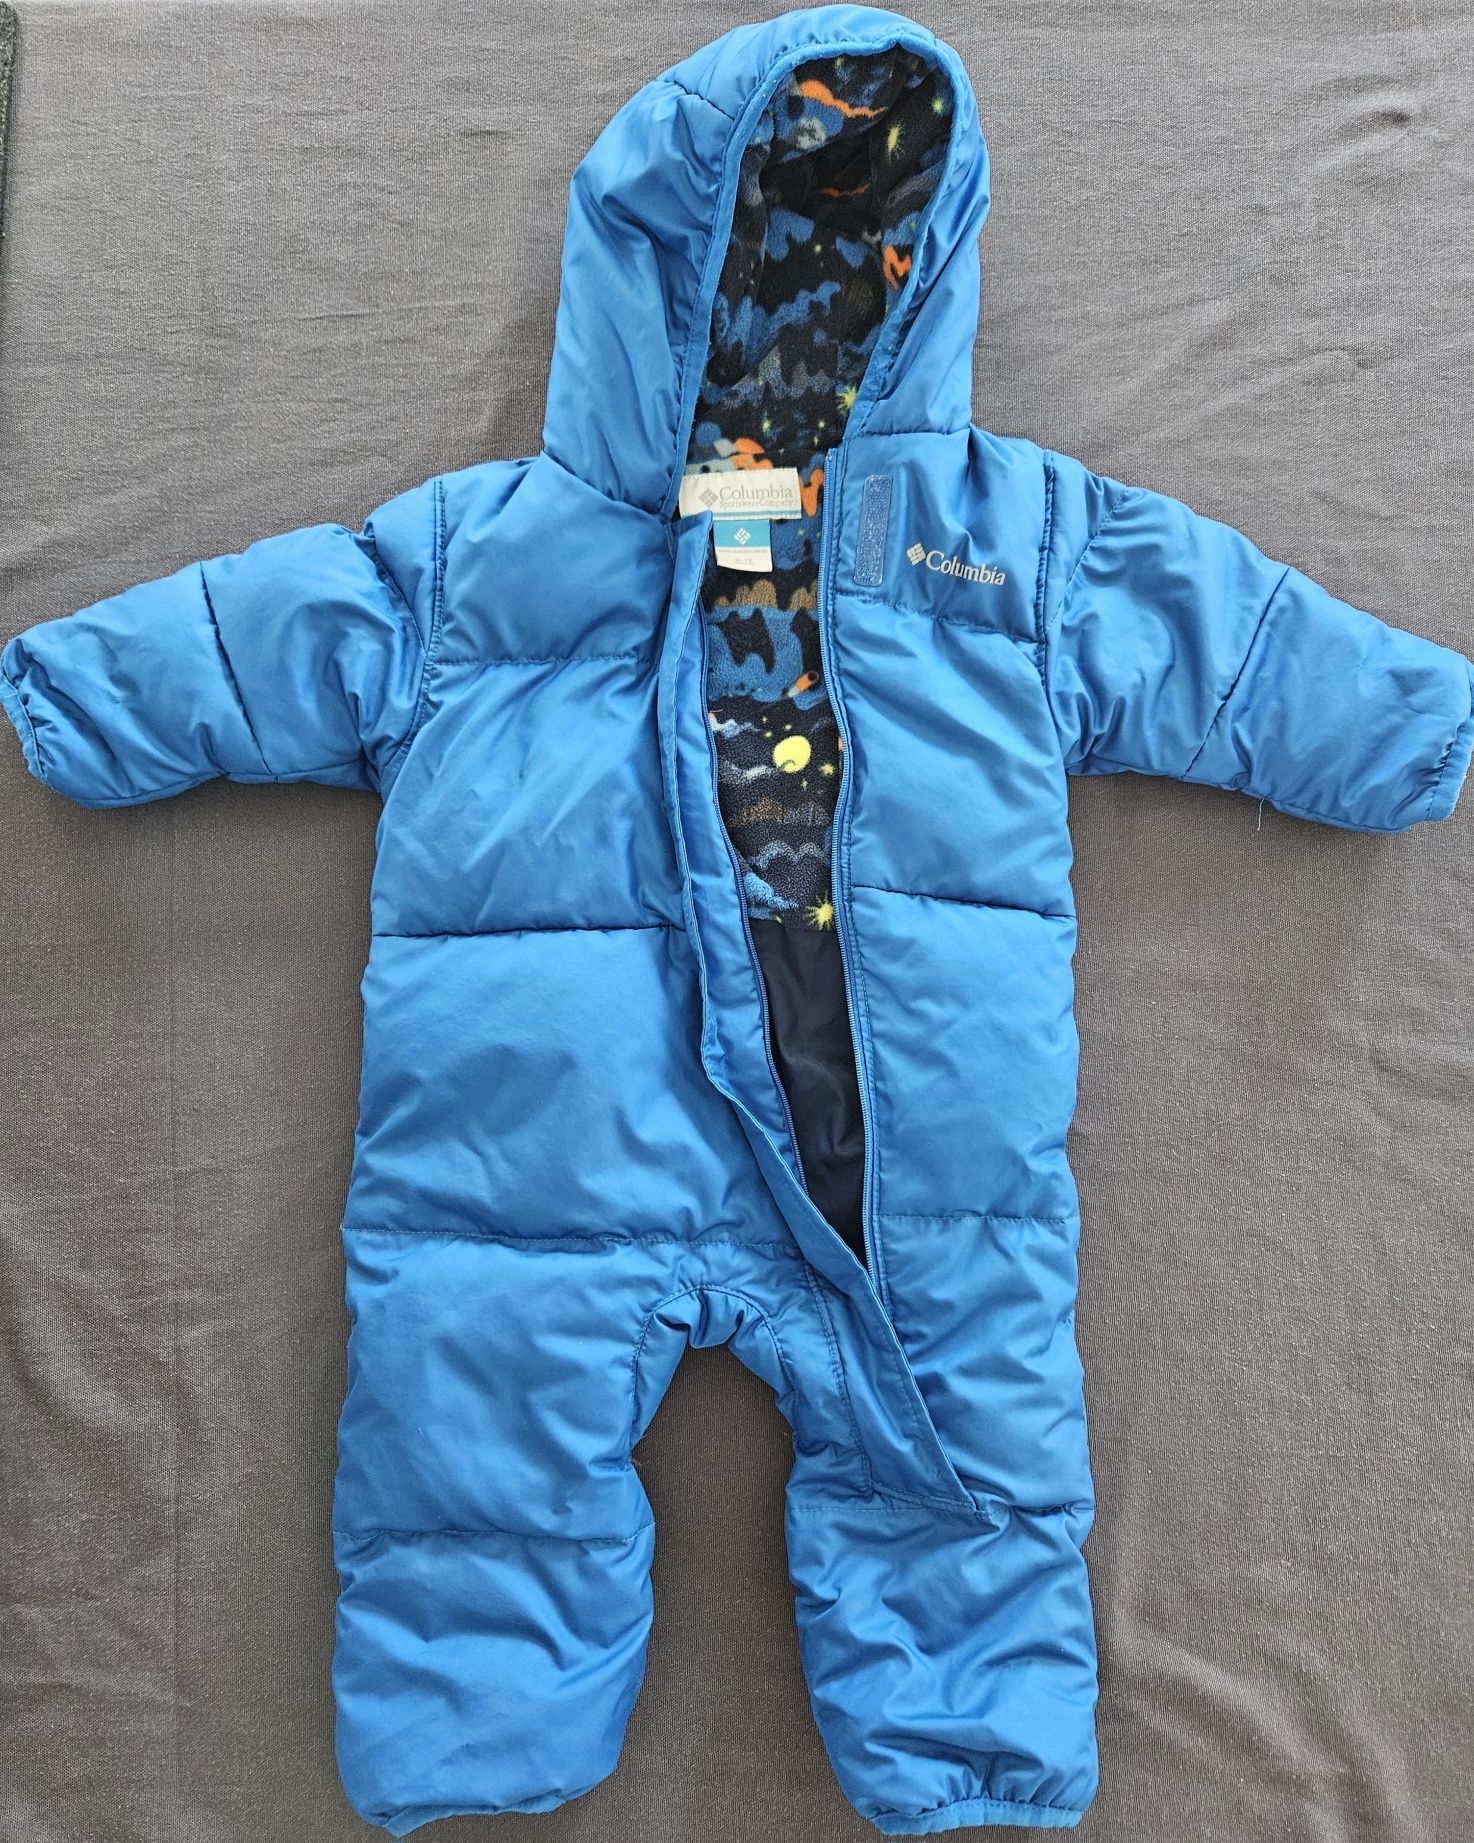 Vând articole îmbrăcăminte de iarna pentru bebeluș de 6 luni (Columbia